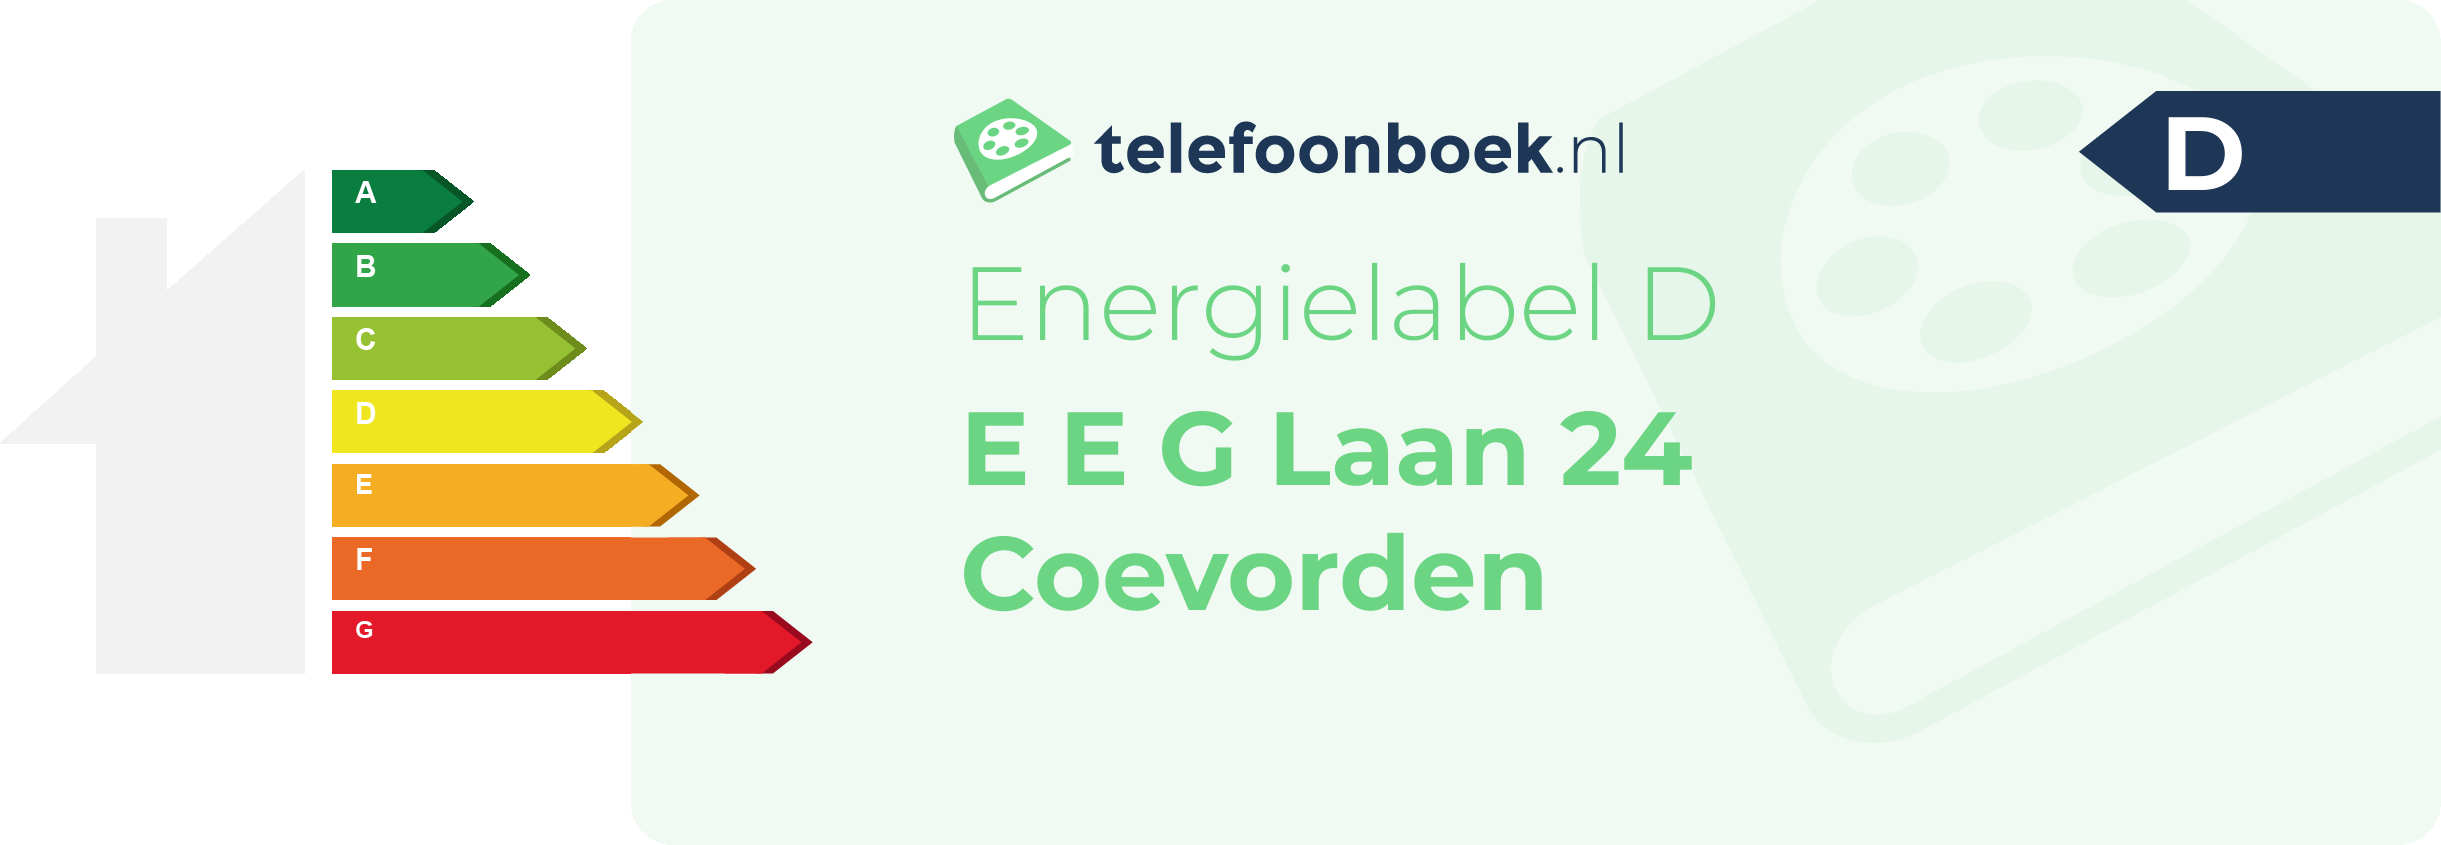 Energielabel E E G Laan 24 Coevorden